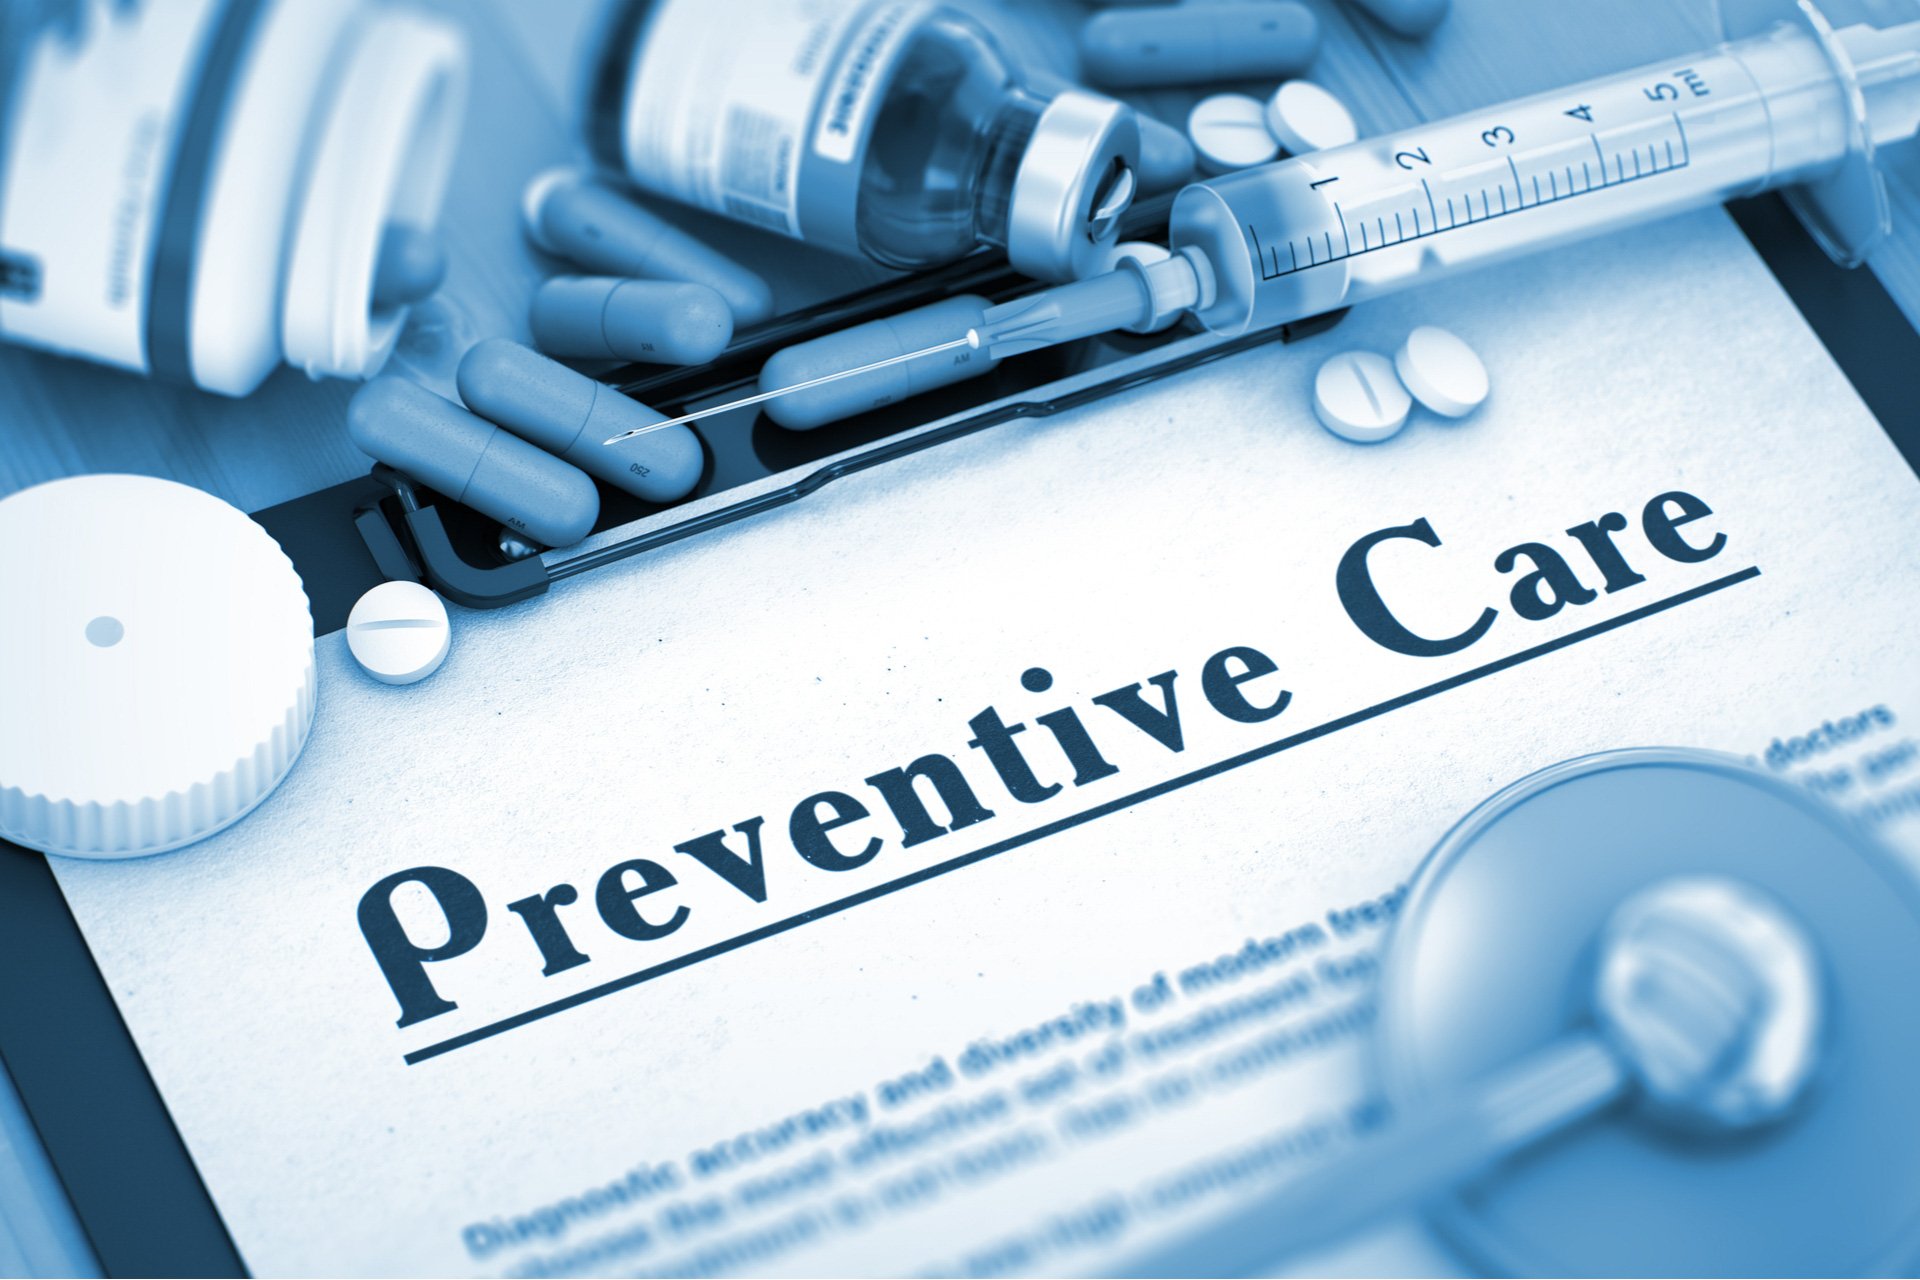 preventative care